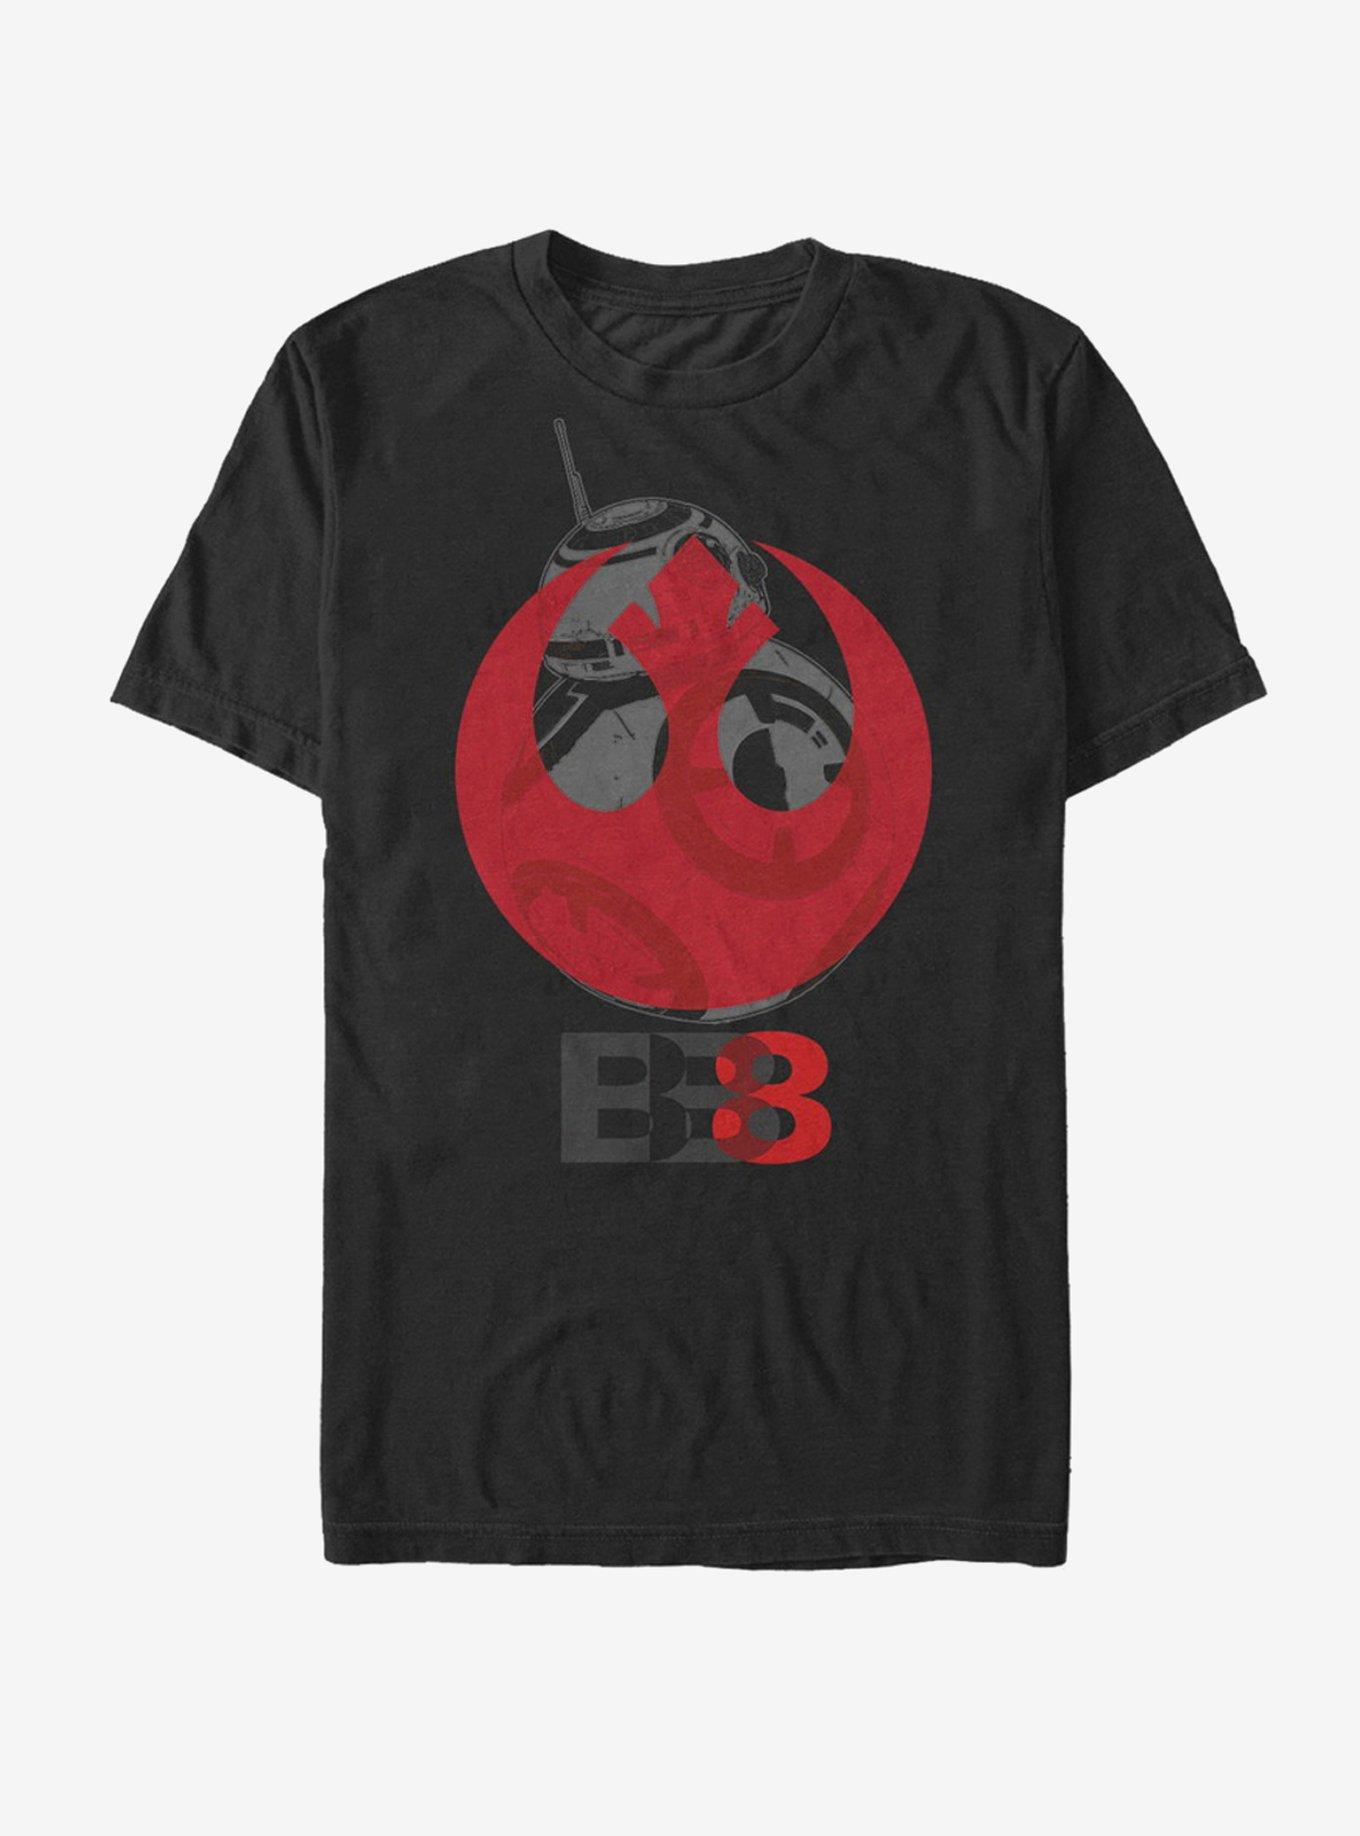 Star Wars BB-8 Rebel Emblem T-Shirt, BLACK, hi-res